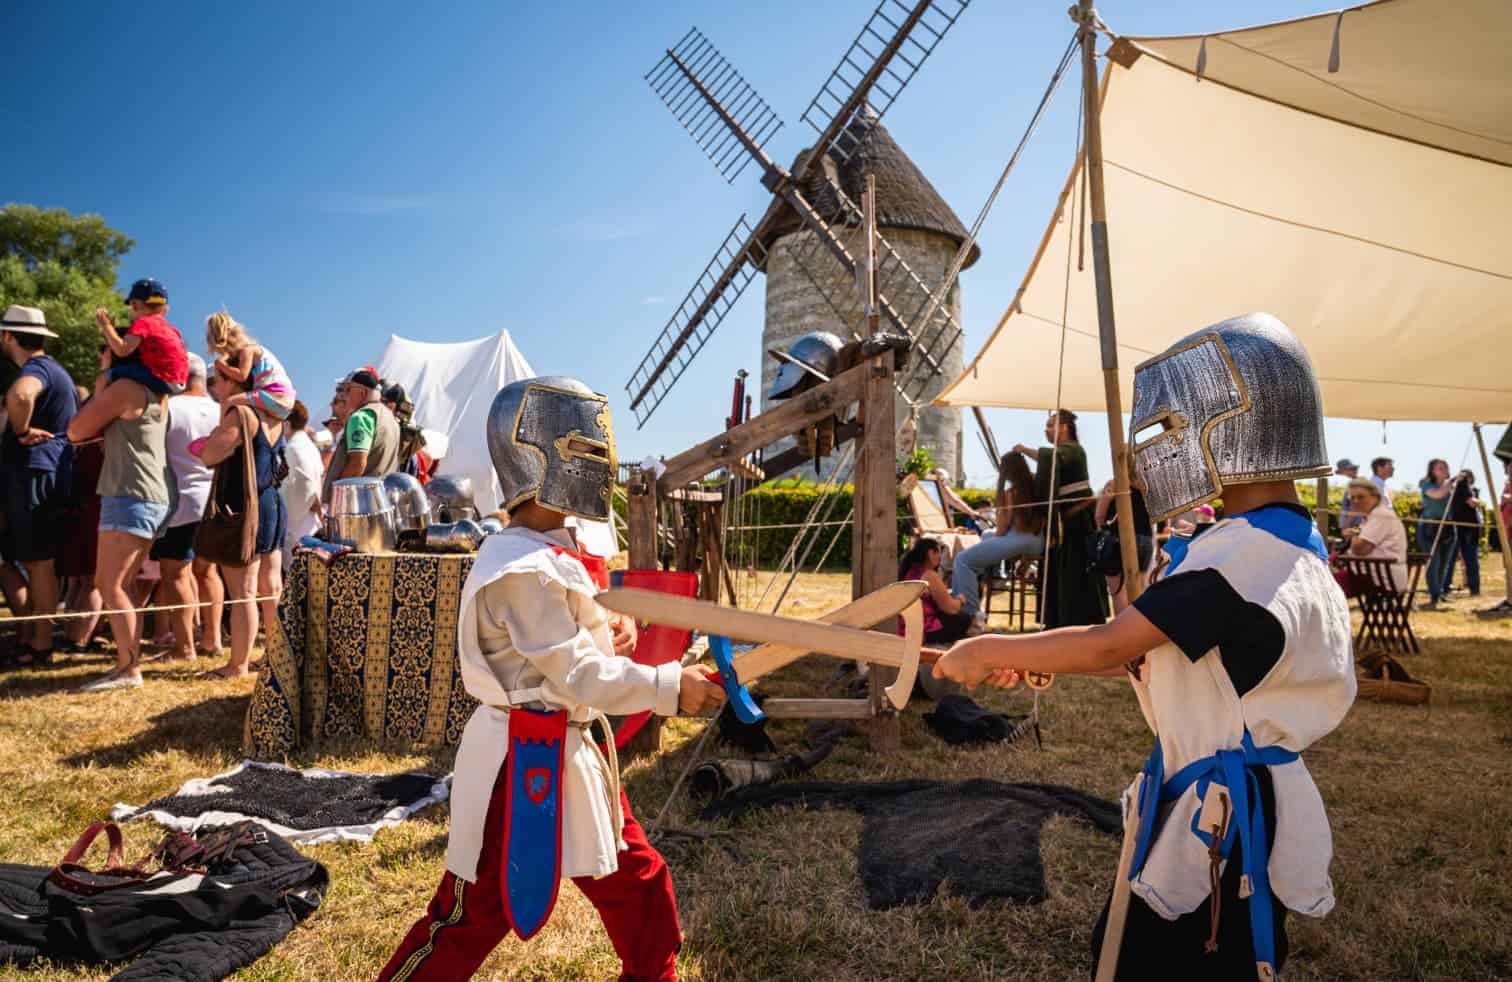 Deux enfants en armure médiévale jouent au combat avec des épées en bois lors d'une reconstitution historique en plein air, avec un moulin à vent en arrière-plan et des spectateurs observant.